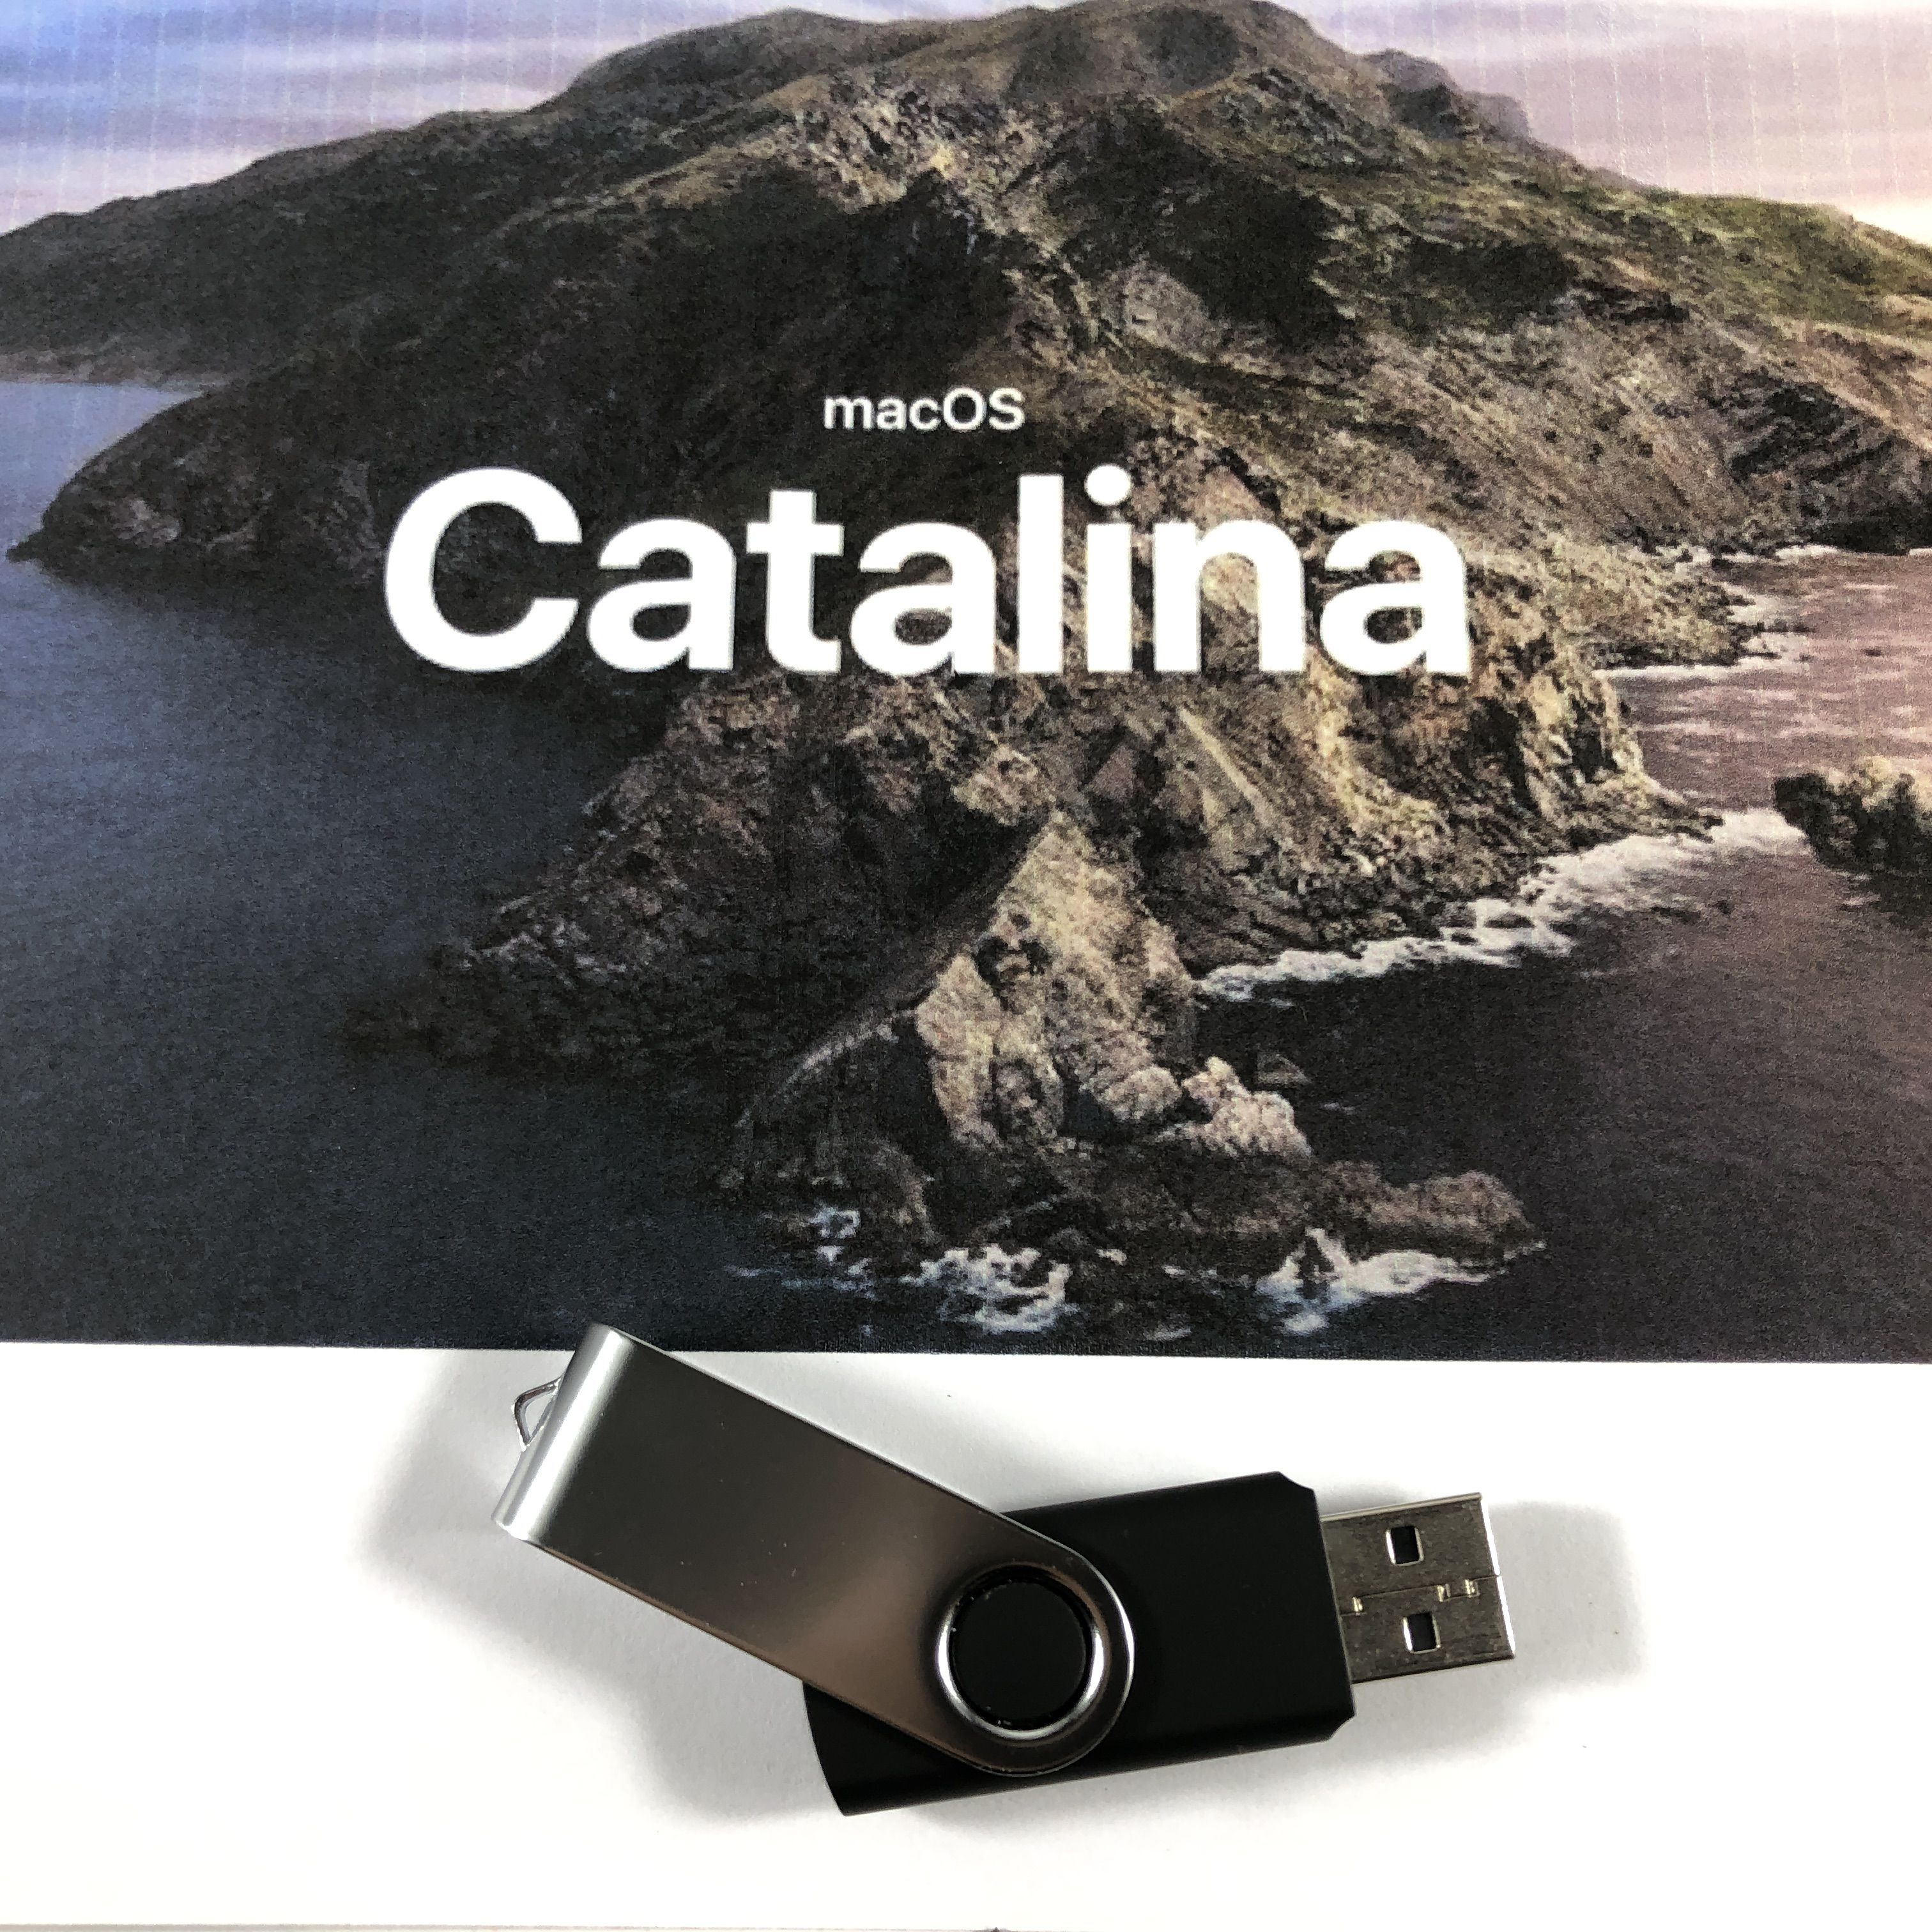 macOS Catalina 10.15.4 Install USB